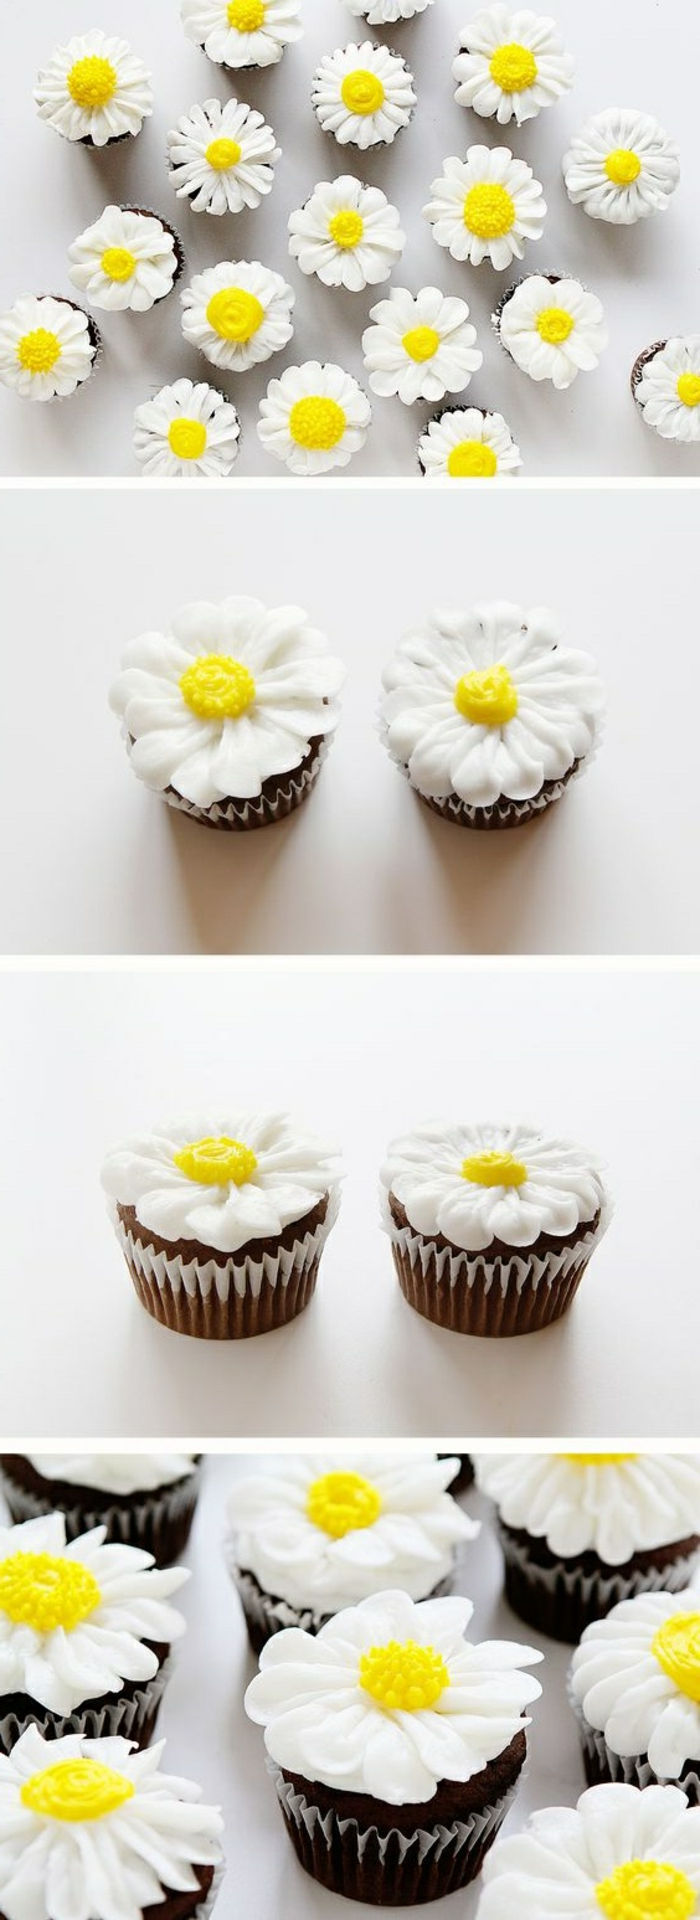 sjokolade cupcakes dekorert med hvite gjess blomster